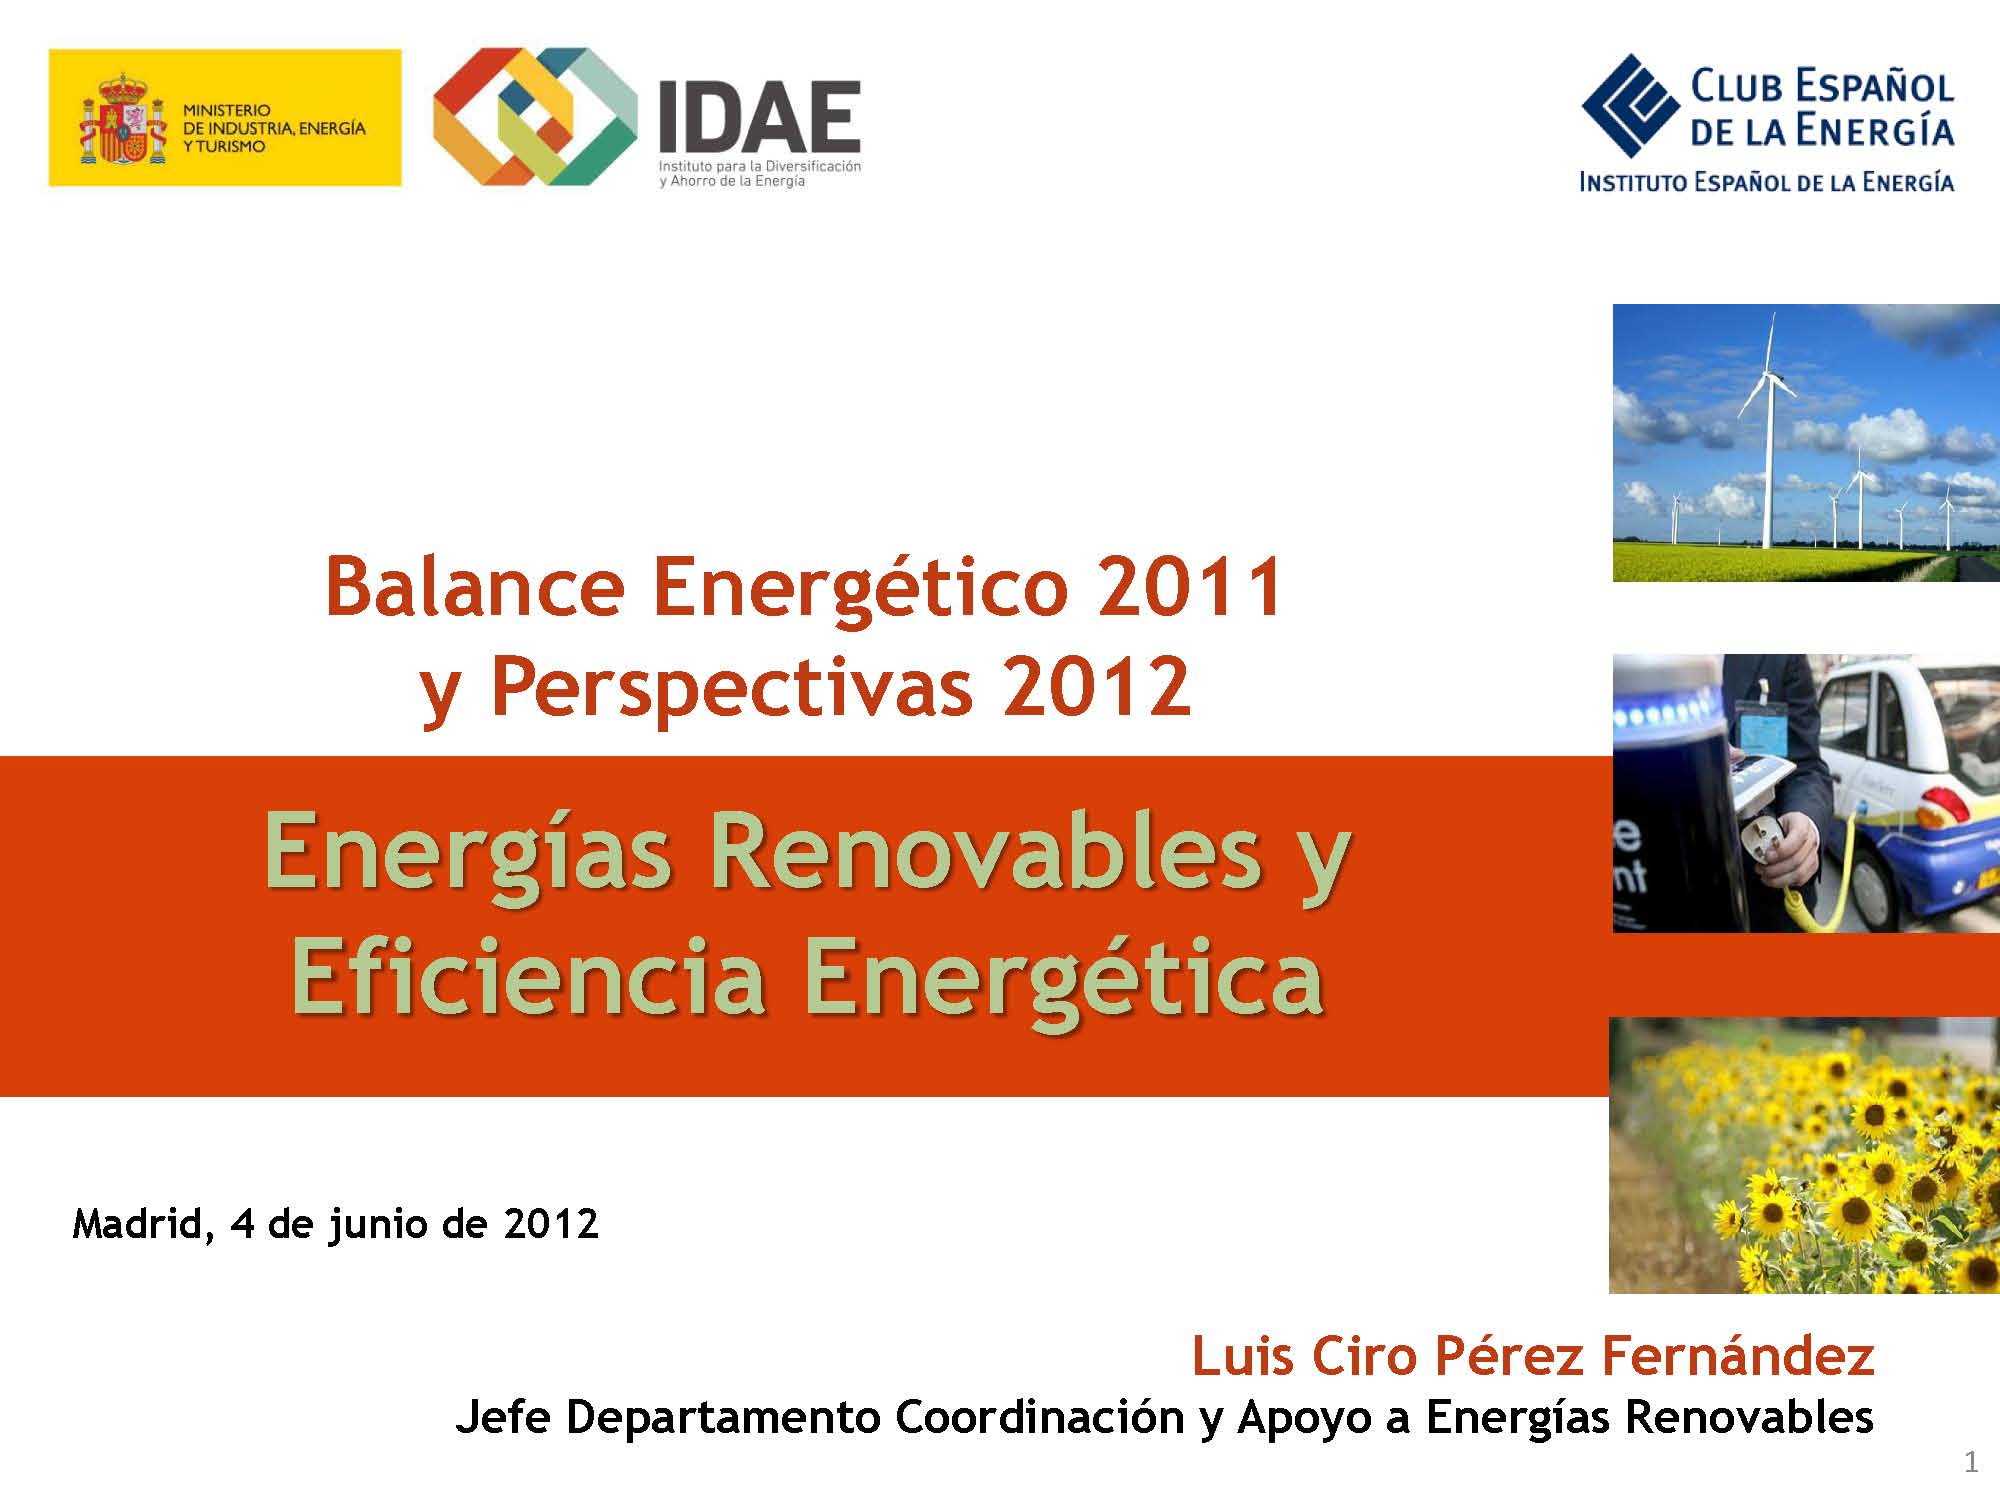 Documento de Balance Energético 2011 y Perspectivas 2012